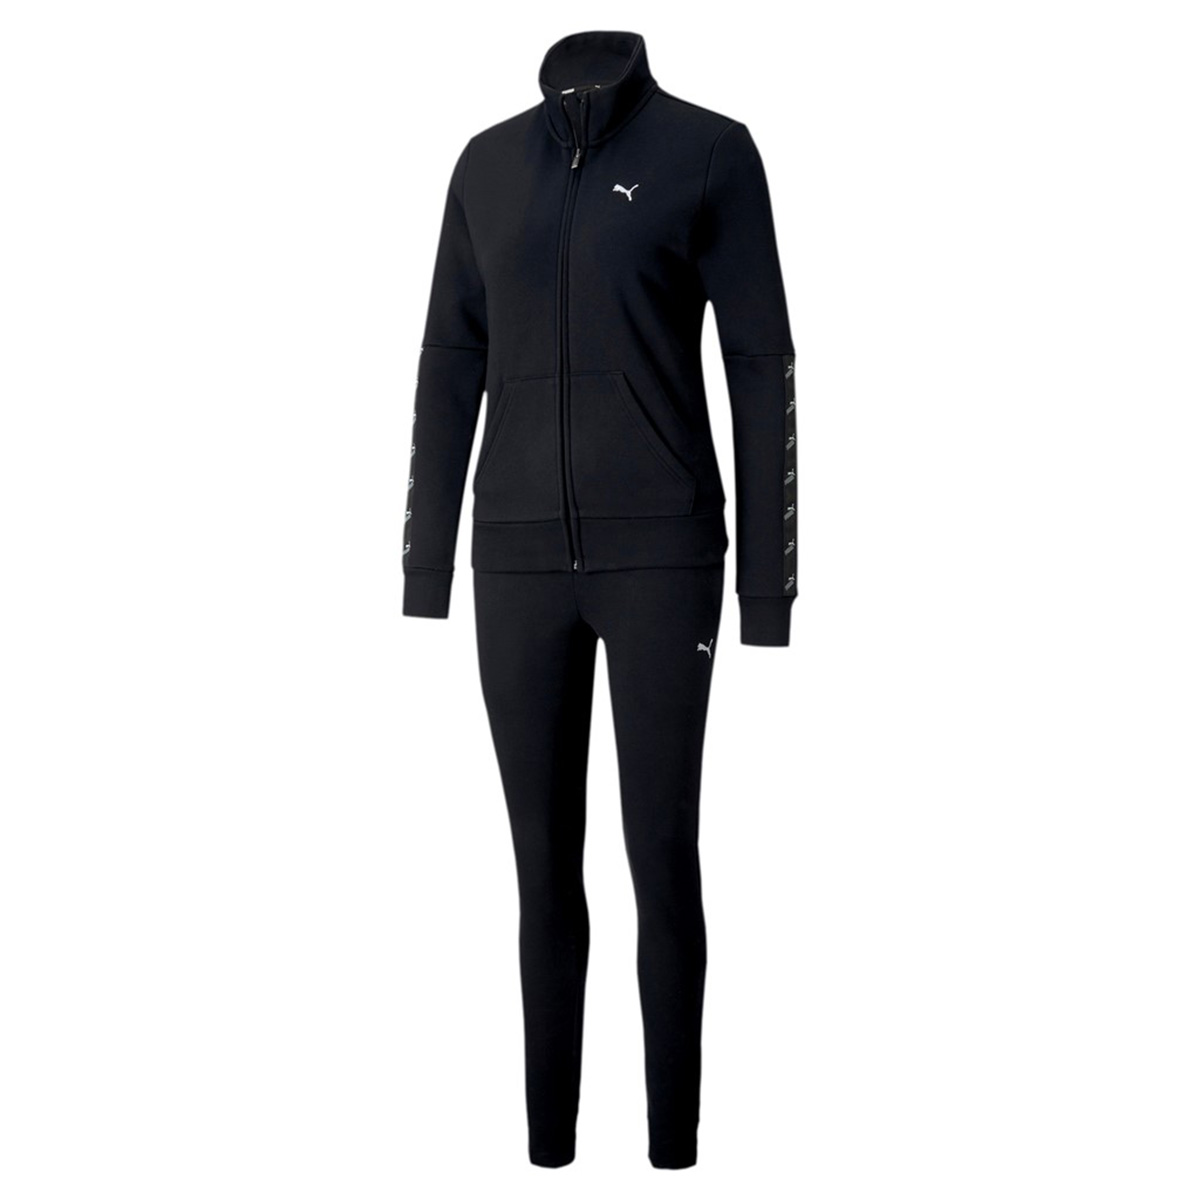 PUMA Damen Amplified Sweat Suit CL Trainingsanzug Jogginganzug 583658 schwarz von Puma